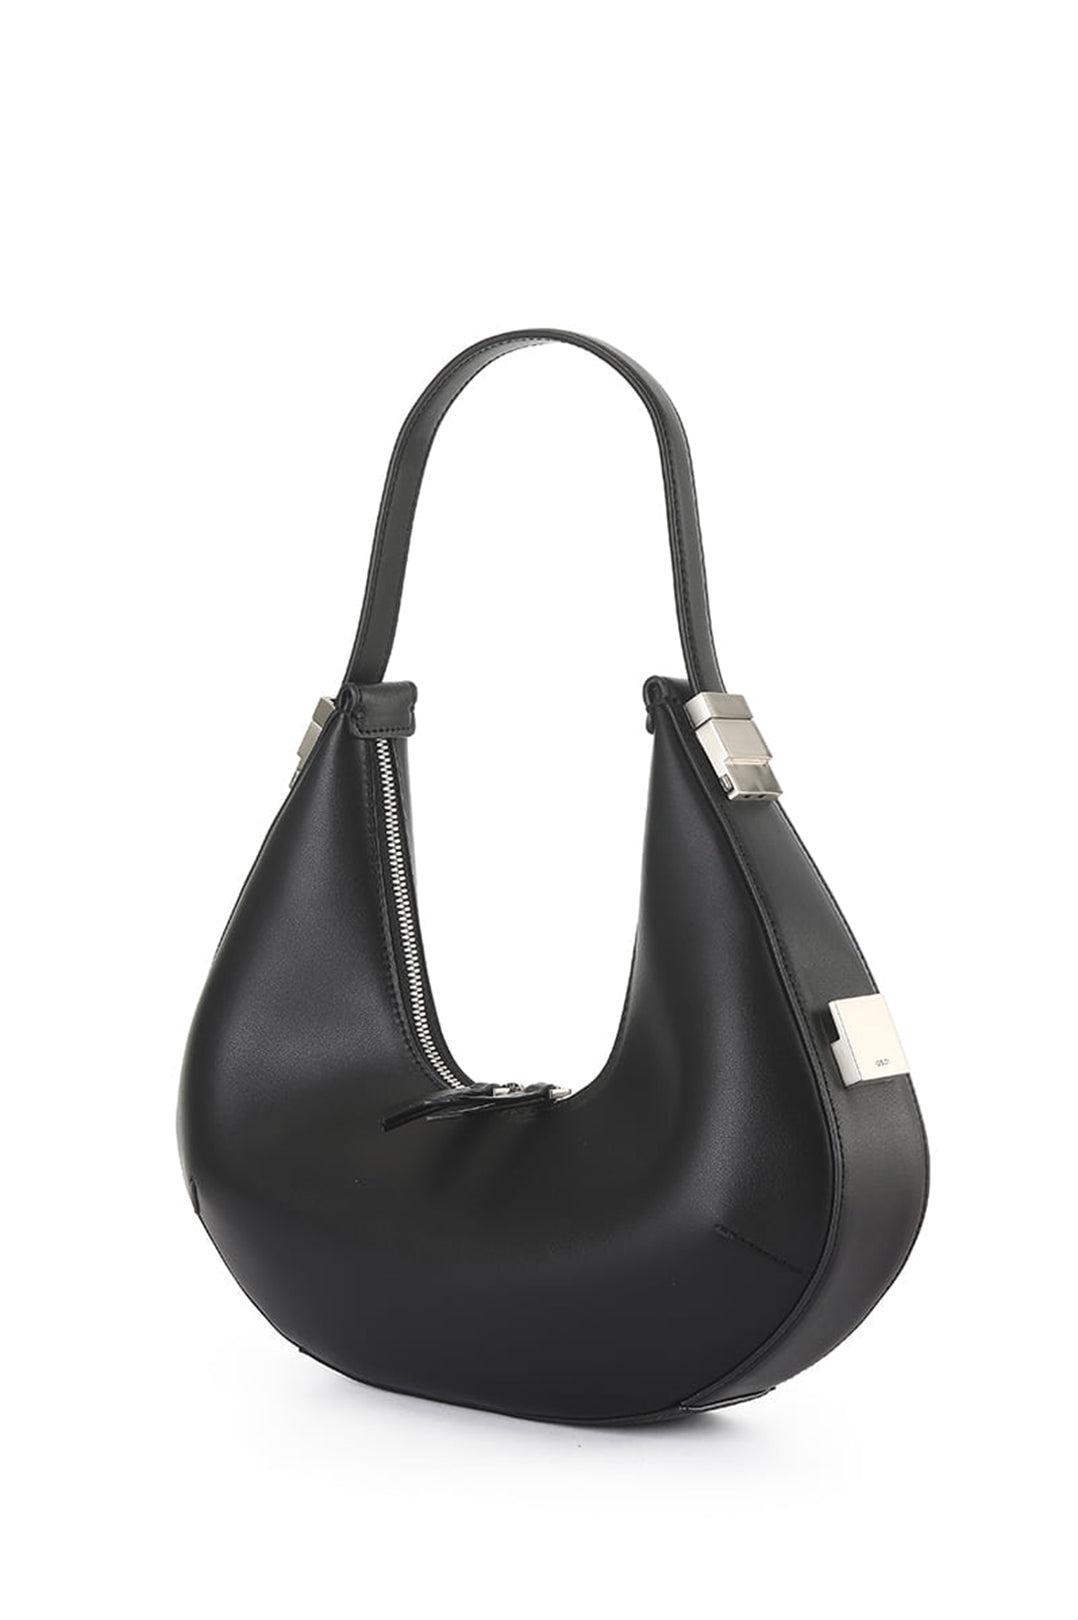 Toni Hobo Black Handbag